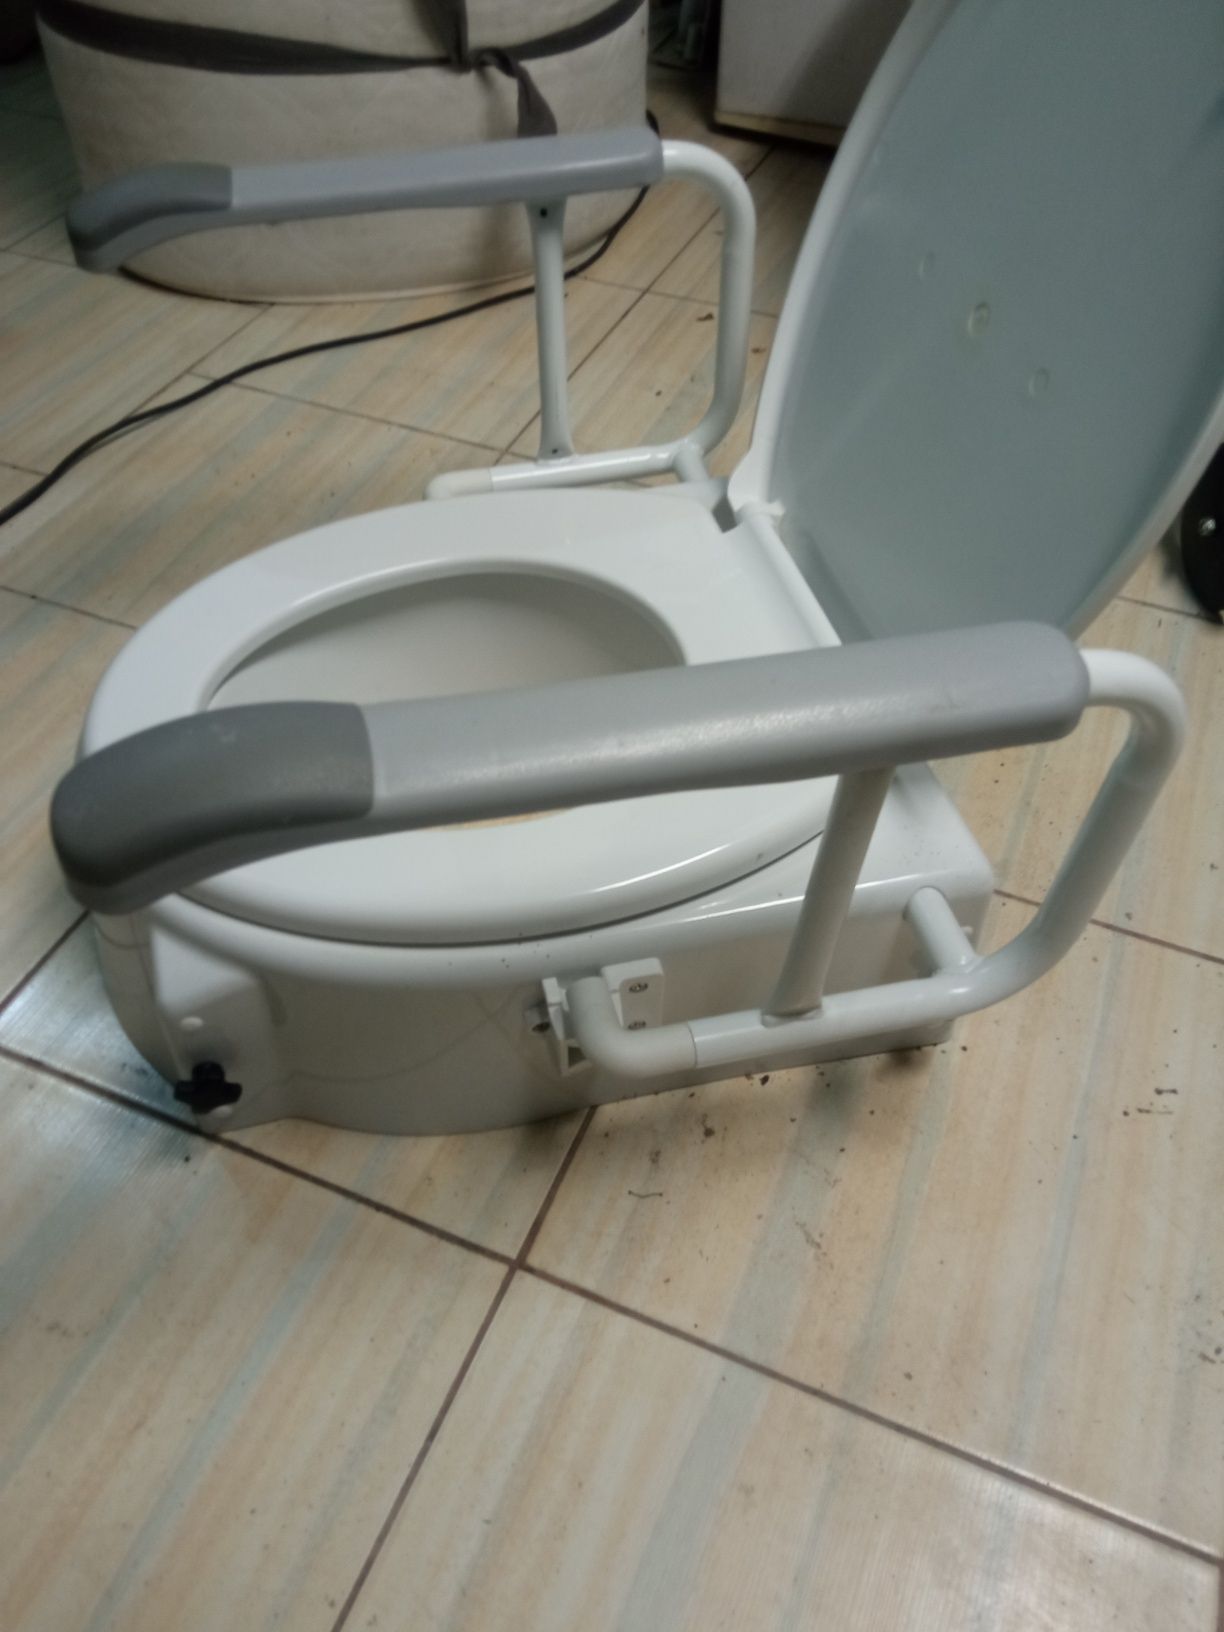 Nakładka na Toaletę dla niepełnosprawnych